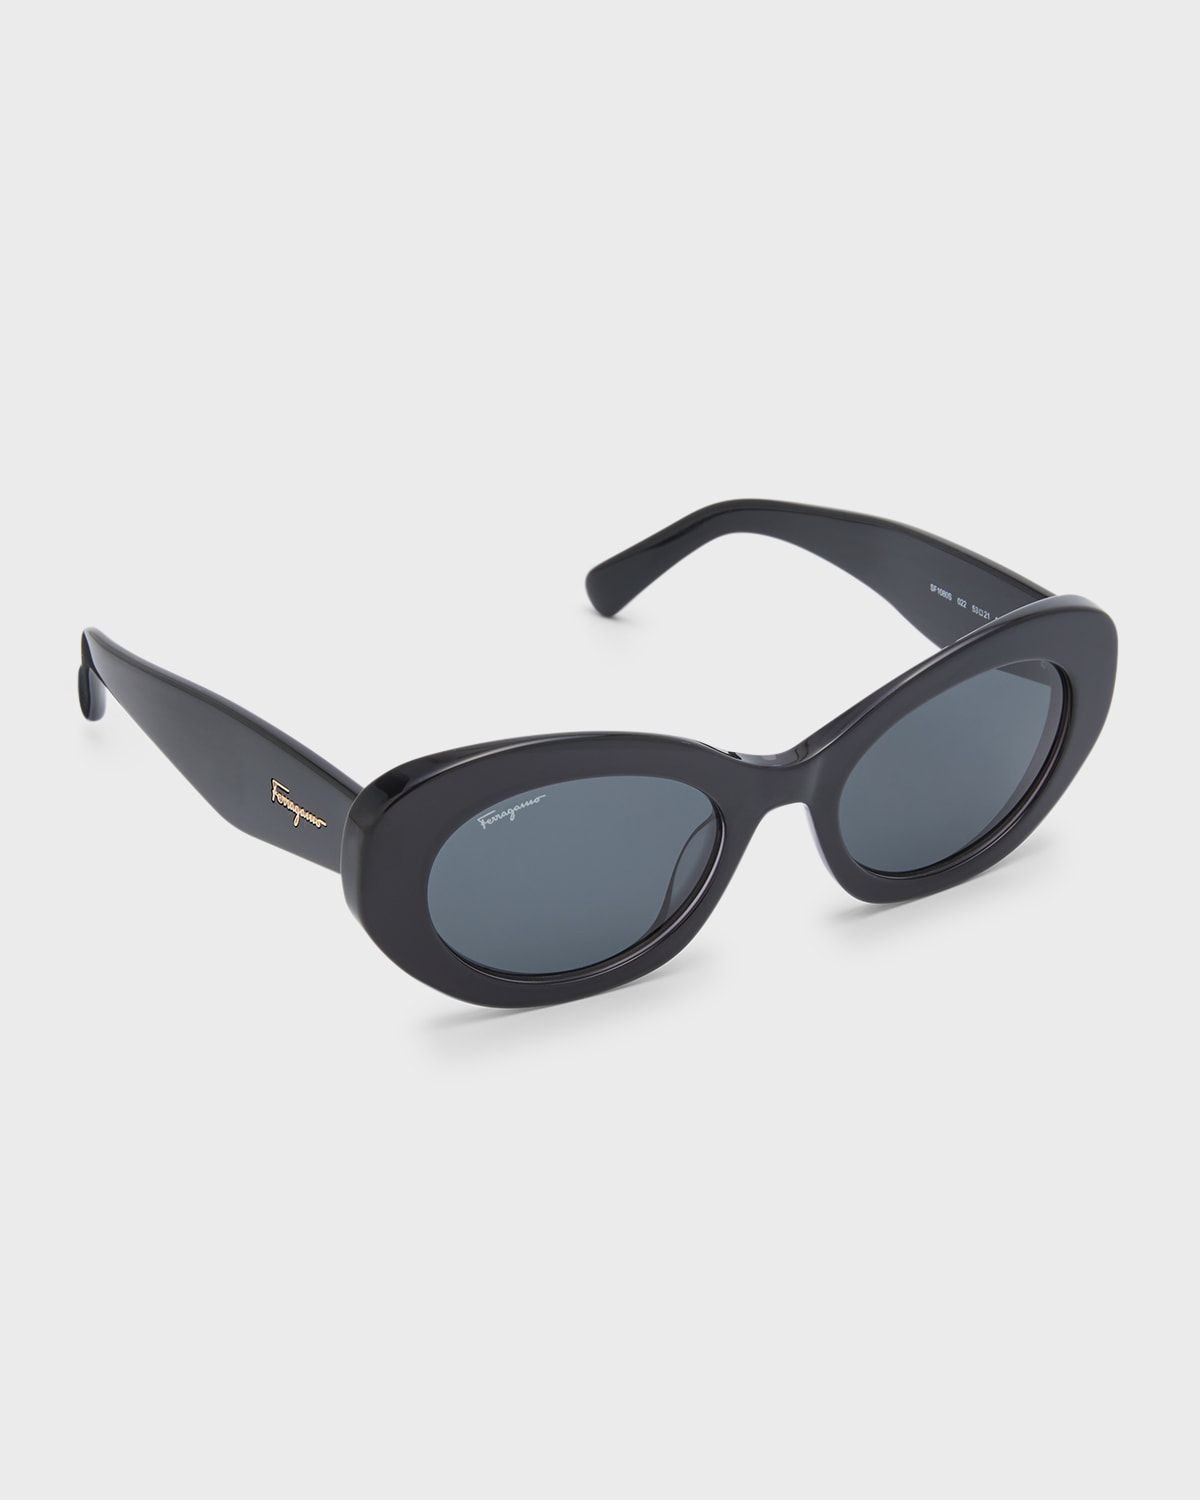 Gucci Monochrome Oval Acetate Sunglasses Neiman Marcus